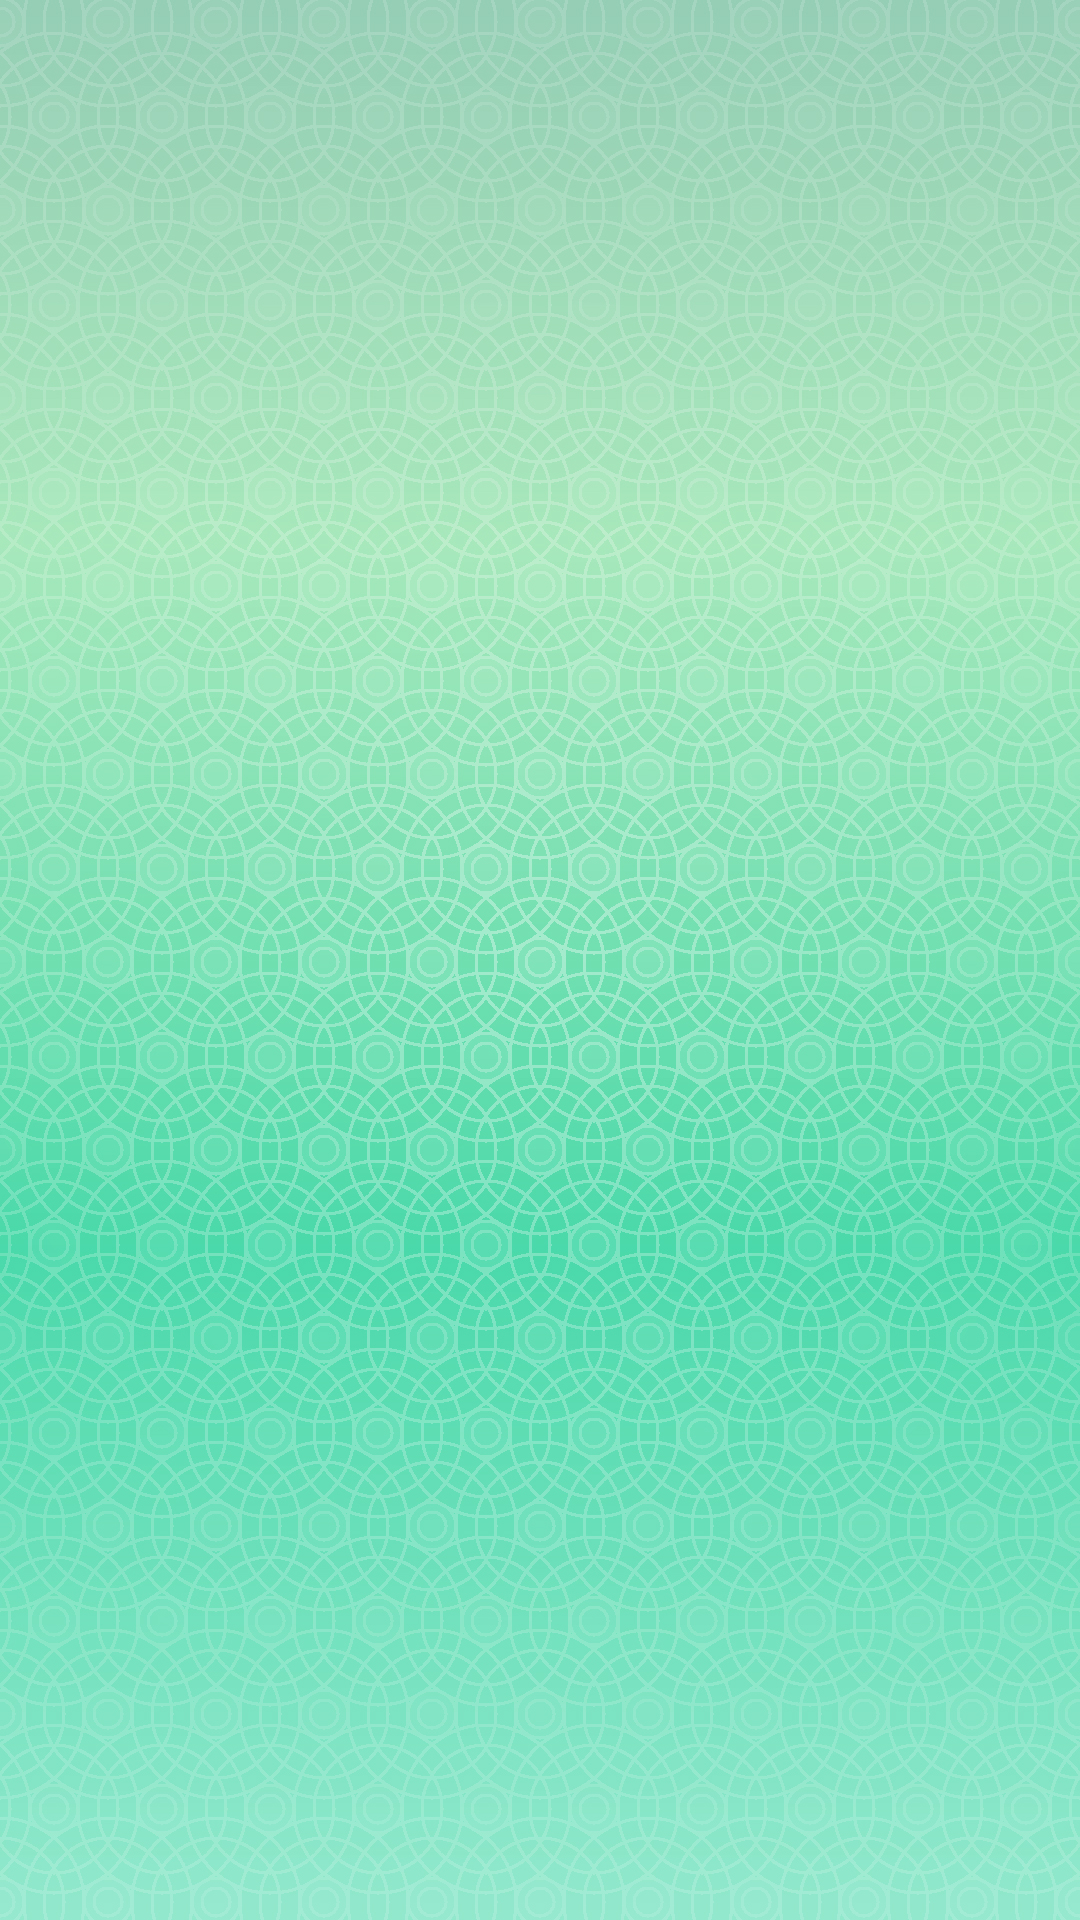 丸グラデーション模様青緑 Wallpaper Sc Iphone8plus壁紙